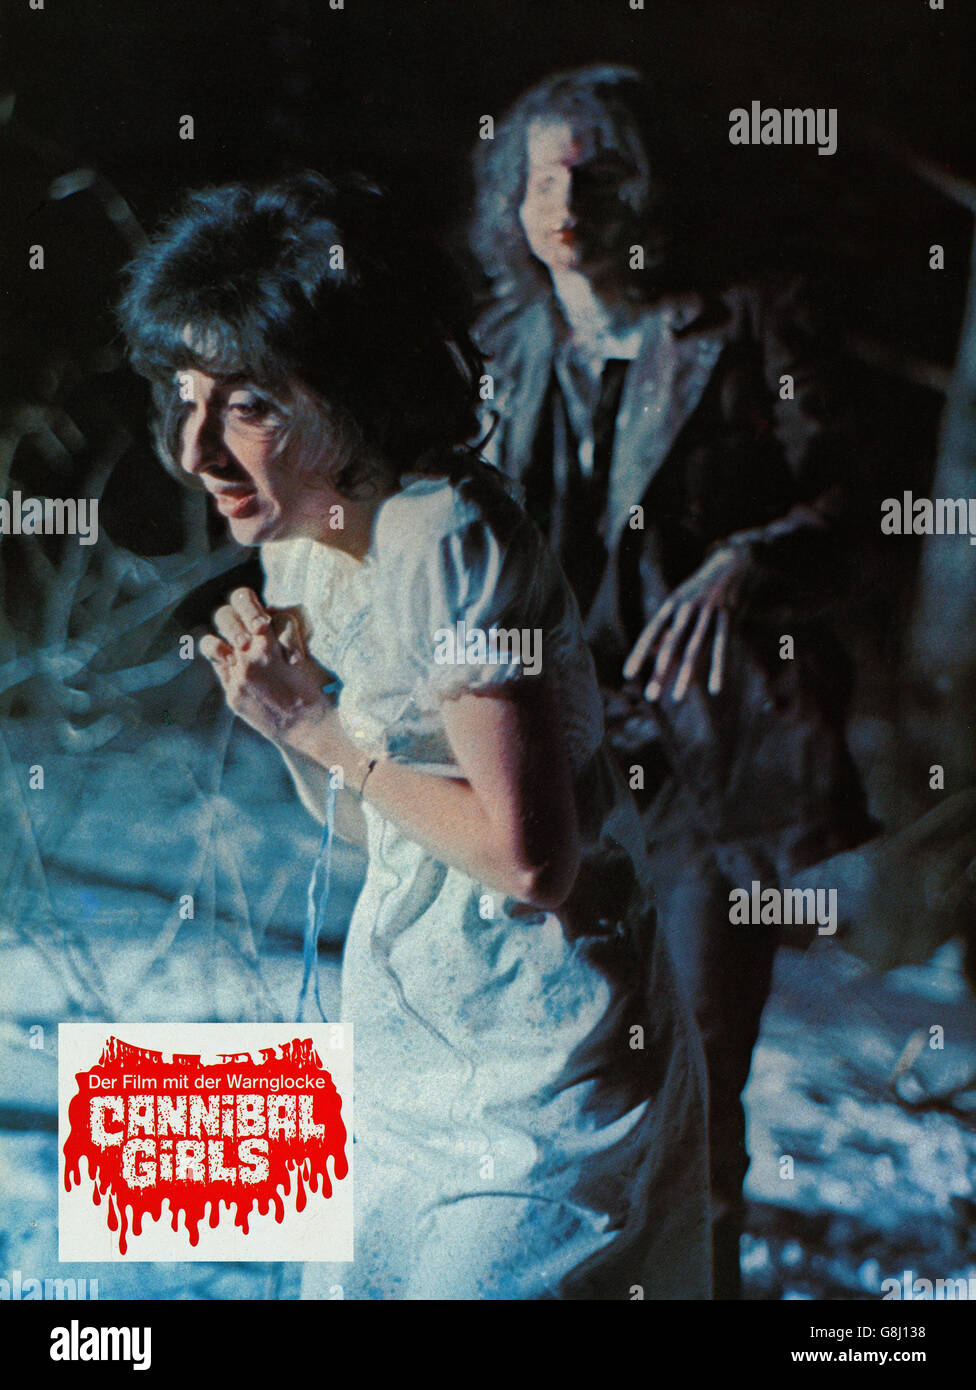 Cannibal ragazze, aka: Cannibal Girls - Der Film mit der Warnglocke, Kanada 1973, Regie: Ivan Reitman, Darsteller: Andrea Martin (vorn) Foto Stock